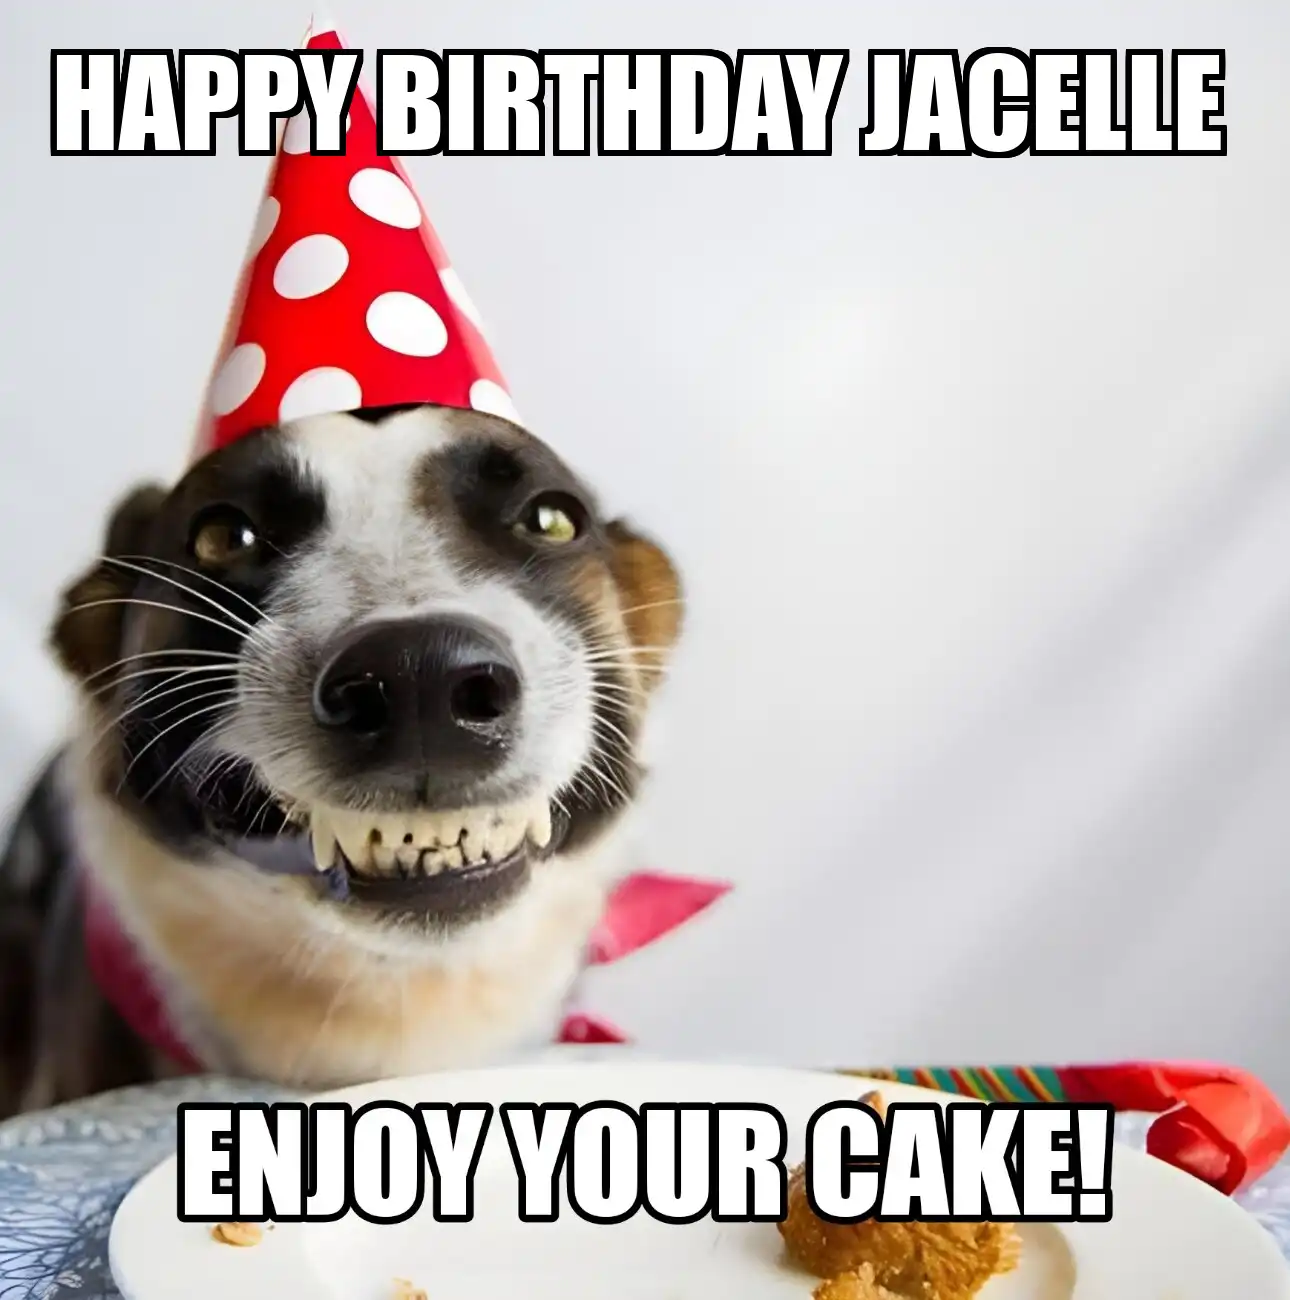 Happy Birthday Jacelle Enjoy Your Cake Dog Meme